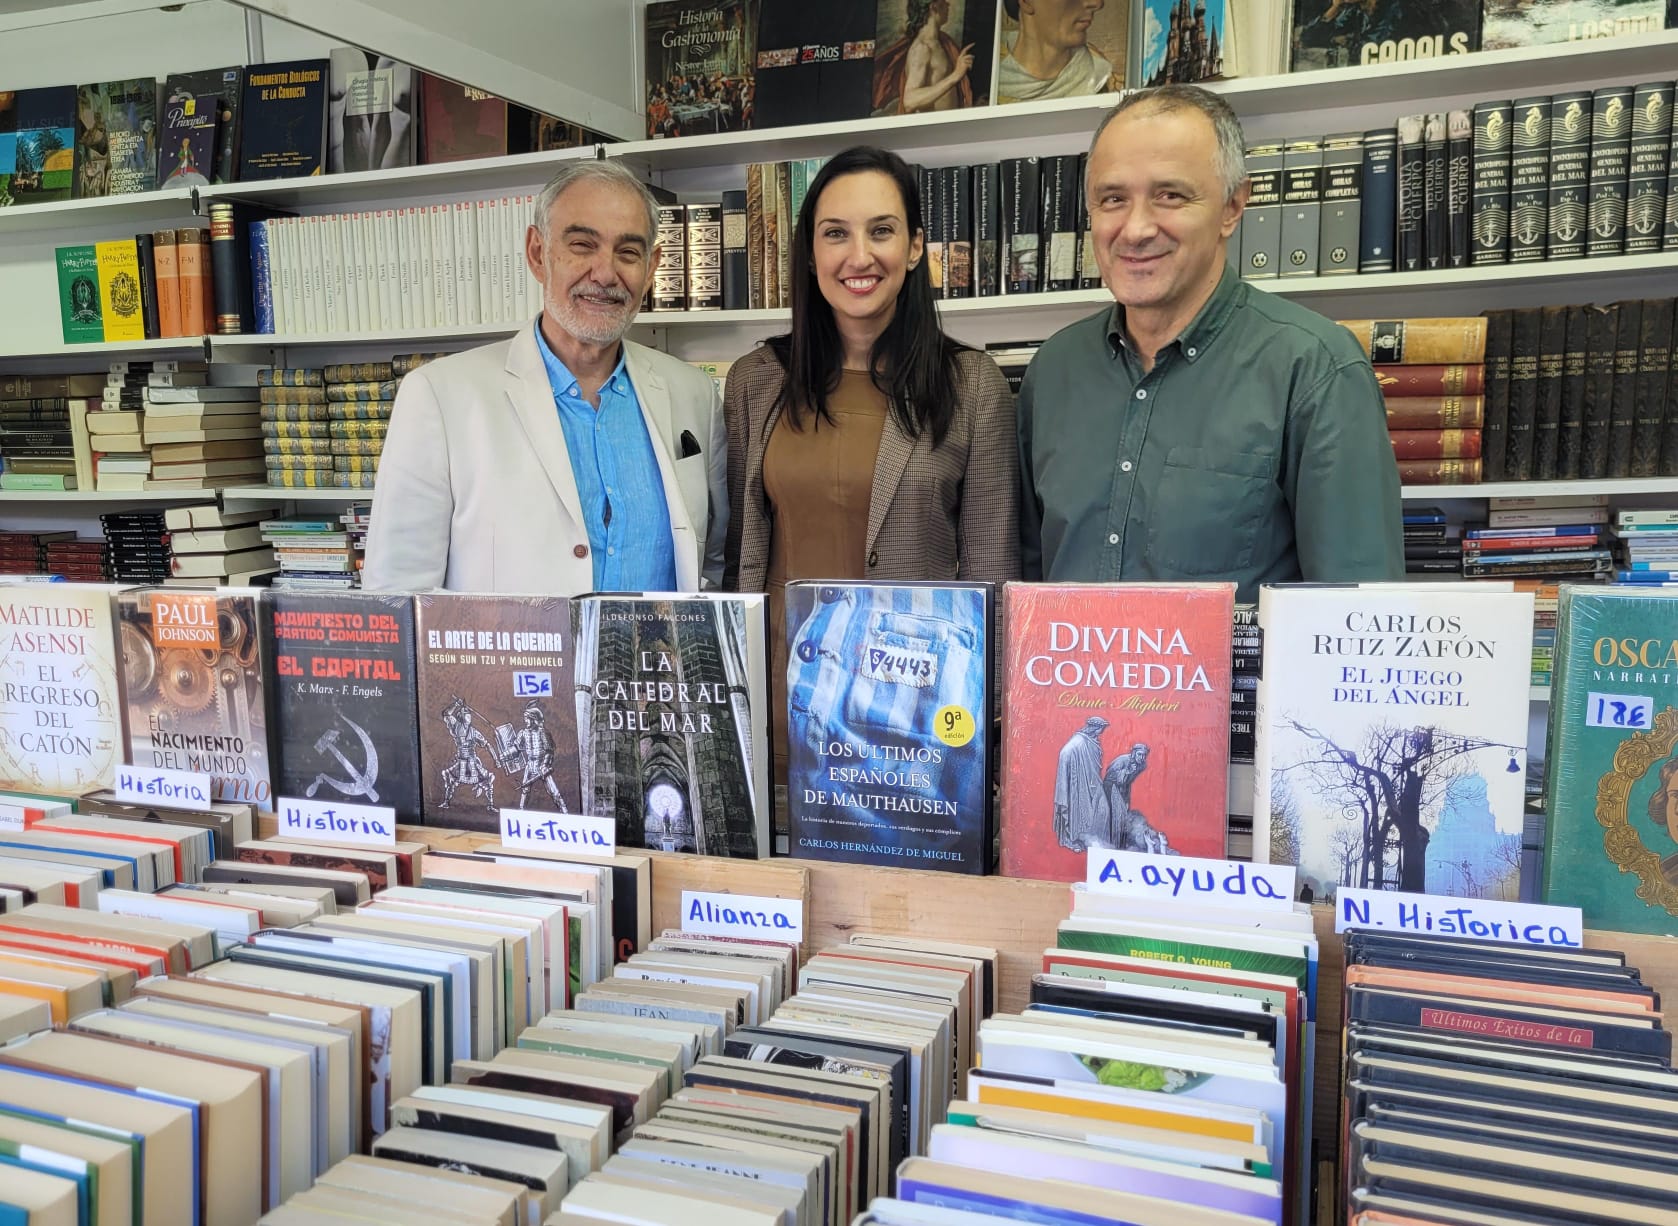 María España: “La Fira del Llibre Antic és una cita obligada per a tots els amants dels llibres, un vertader paradís terrenal de les lletres”